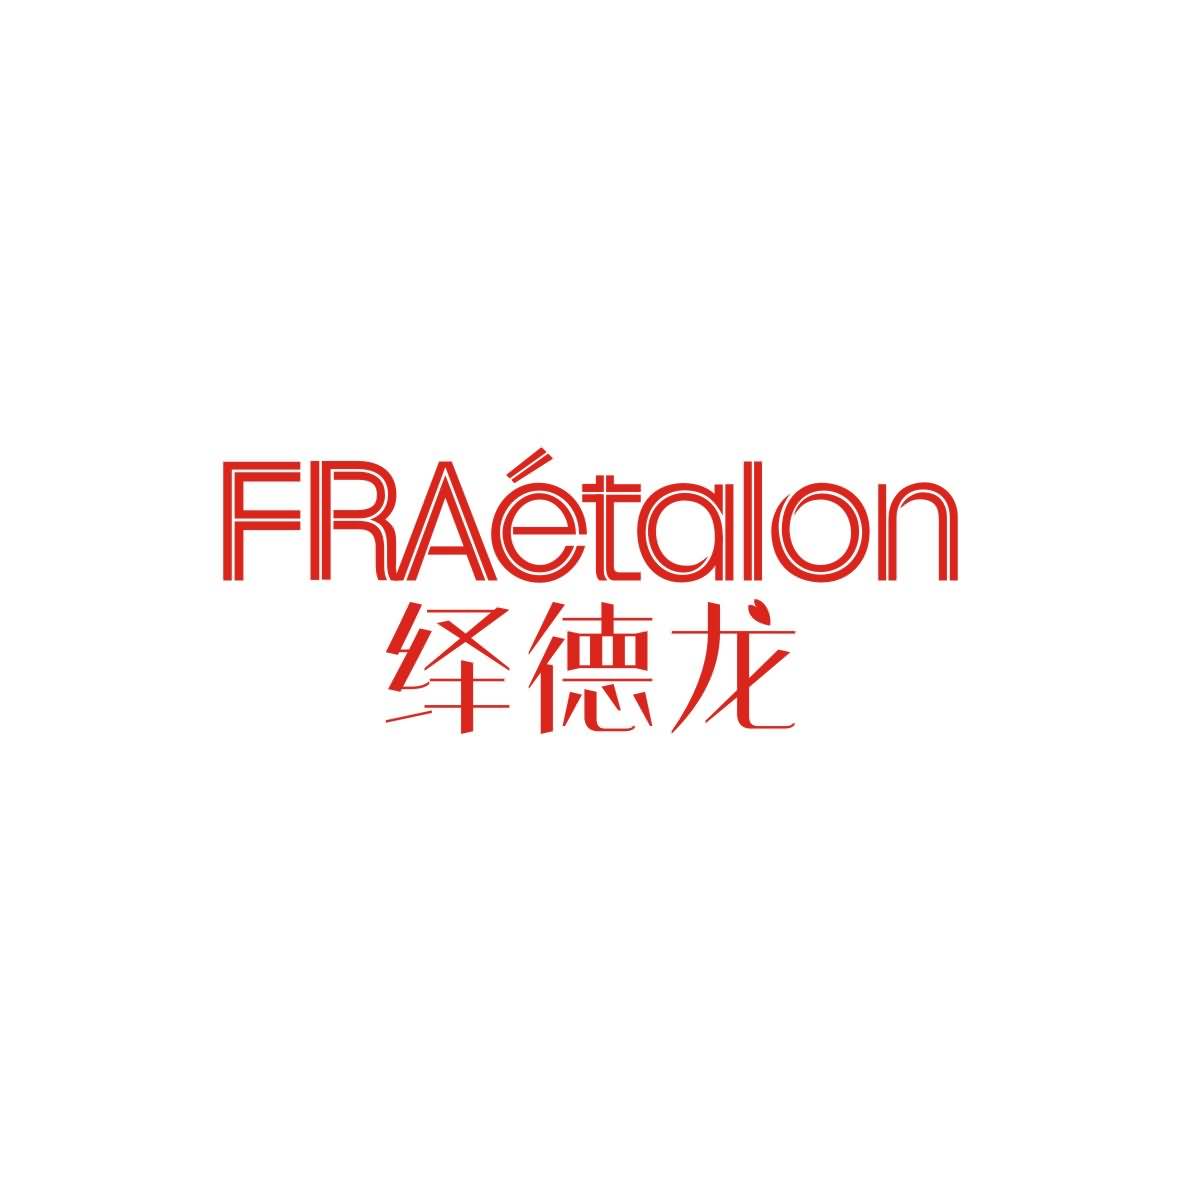 广州品翰文化发展有限公司商标绎德龙 FRAETALON（25类）商标买卖平台报价，上哪个平台最省钱？